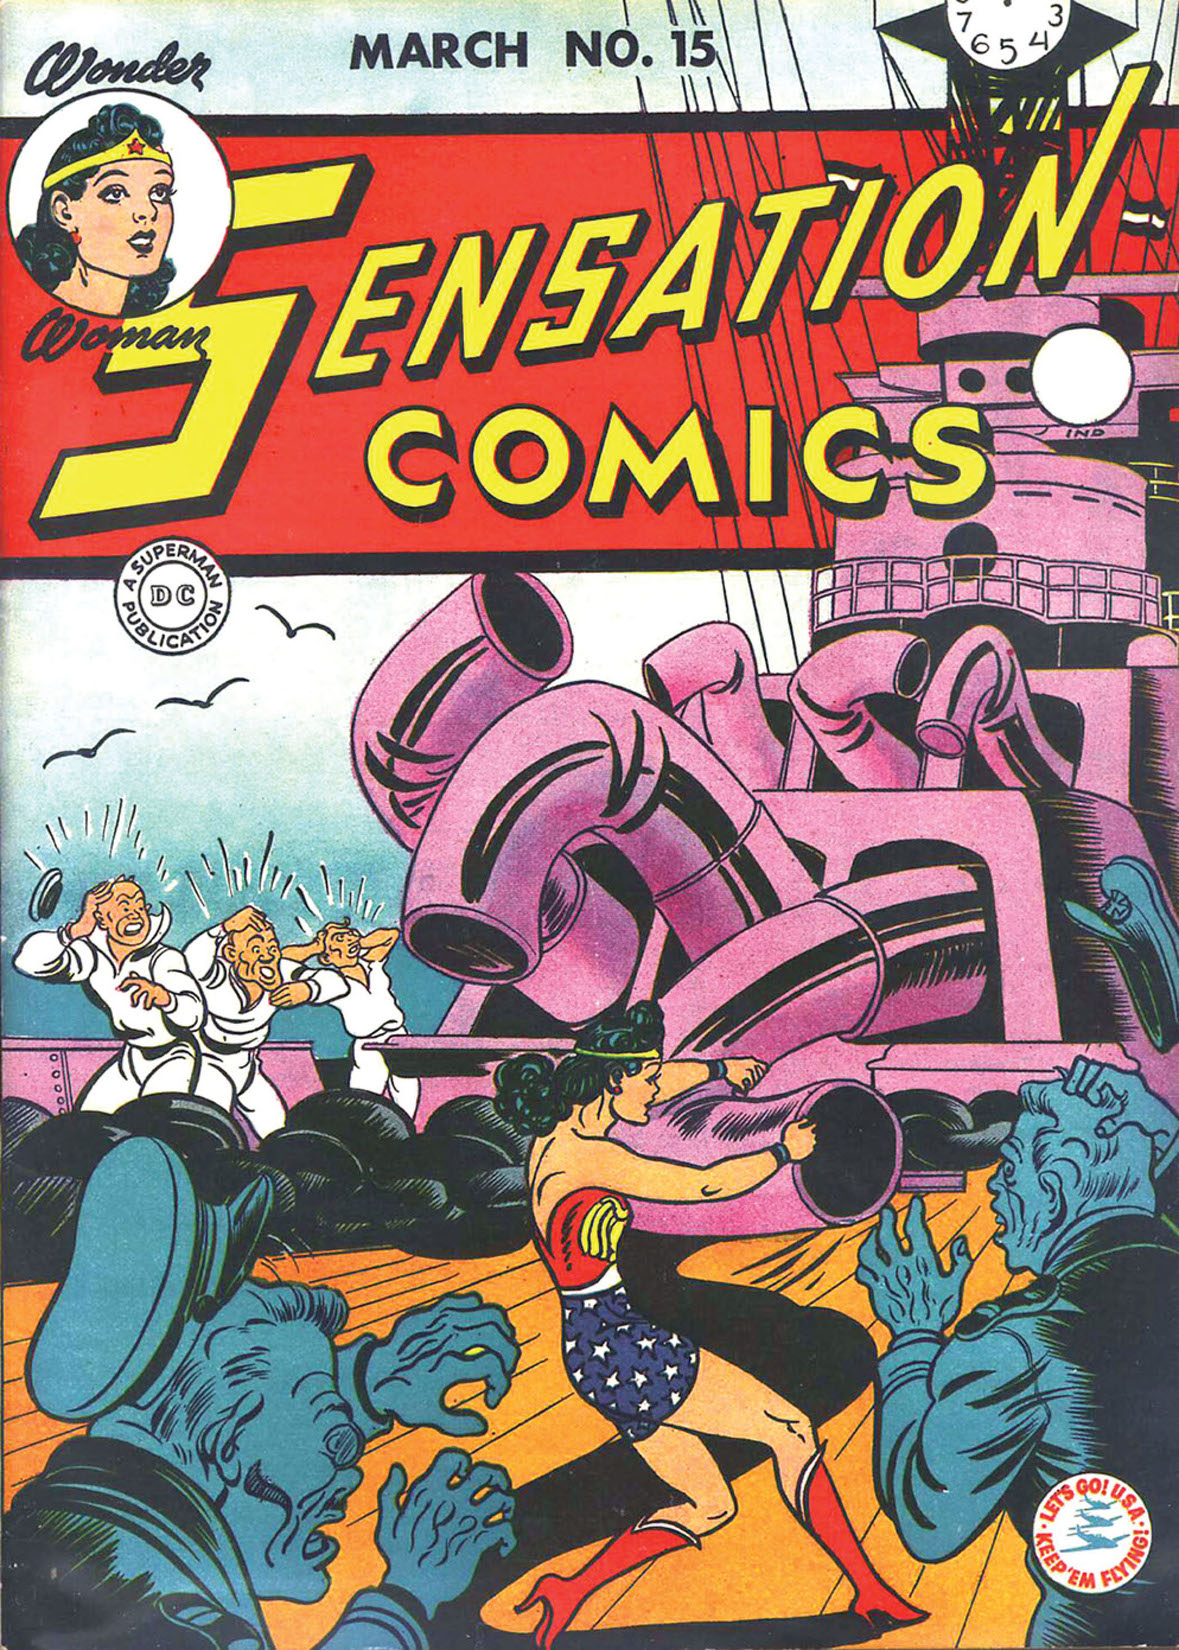 Sensation Comics #15 preview images